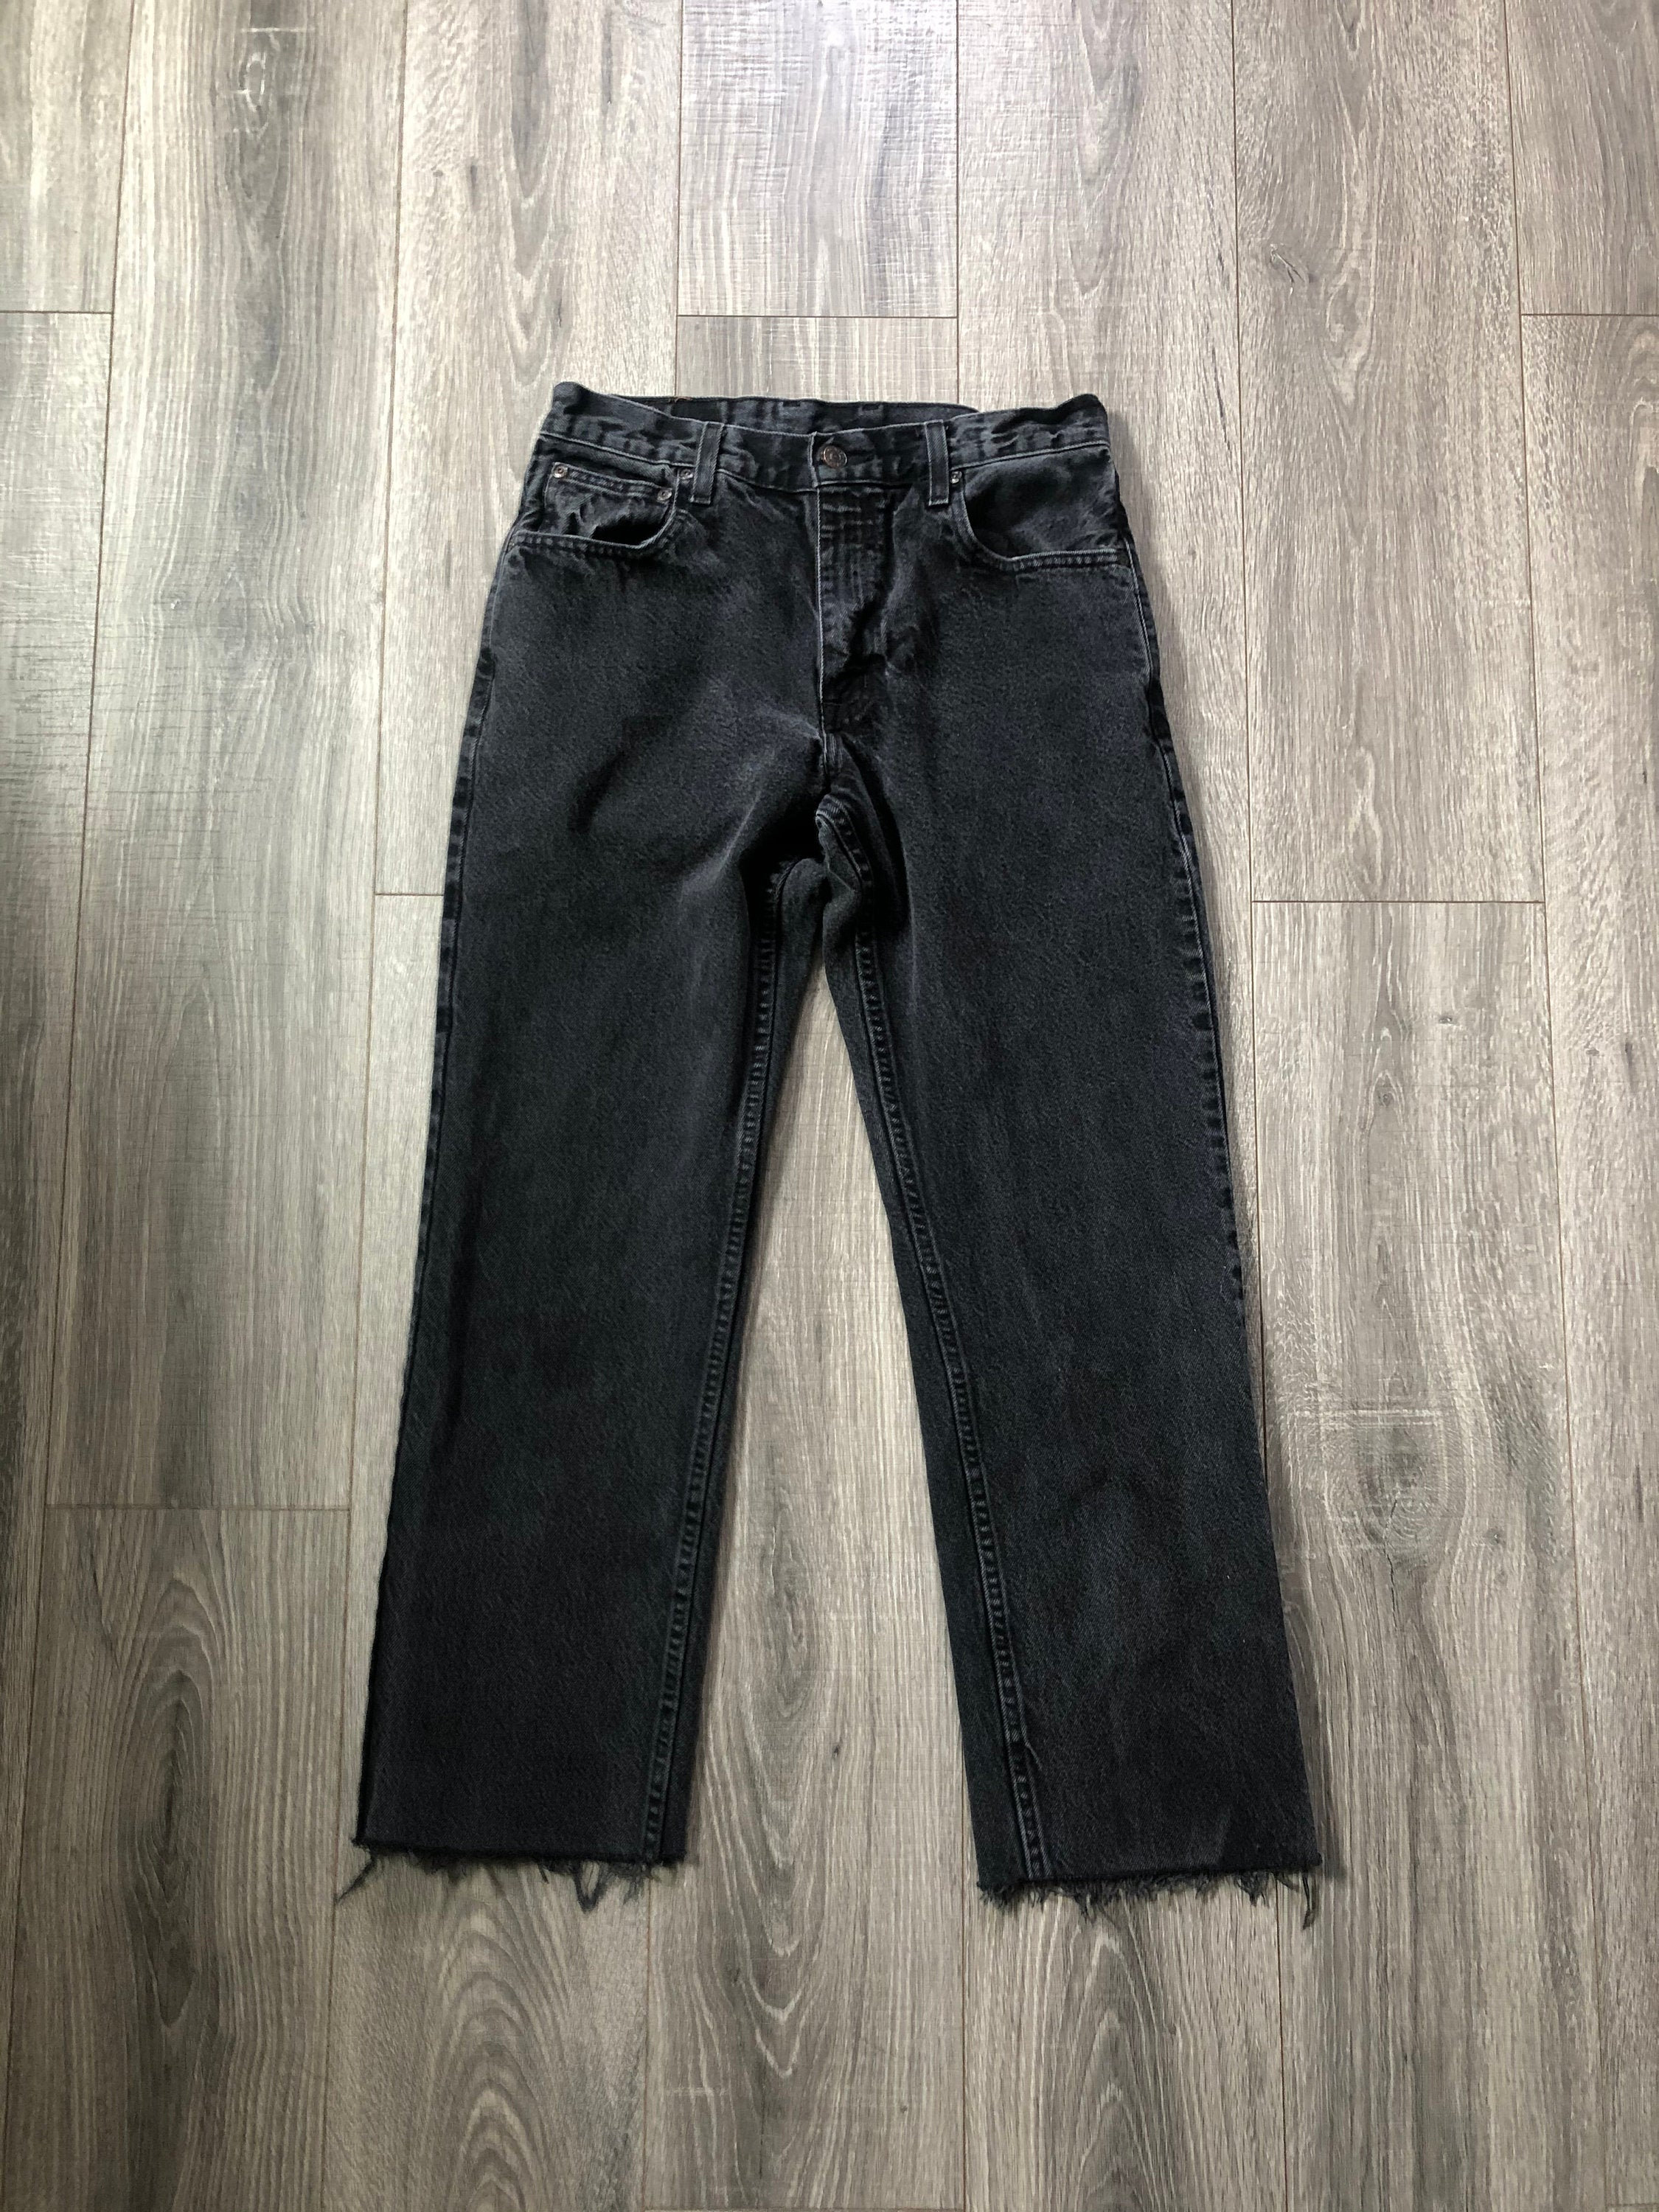 Vintage Black/Acid Wash Gray Denim High Waisted Jeans Vintage | Etsy